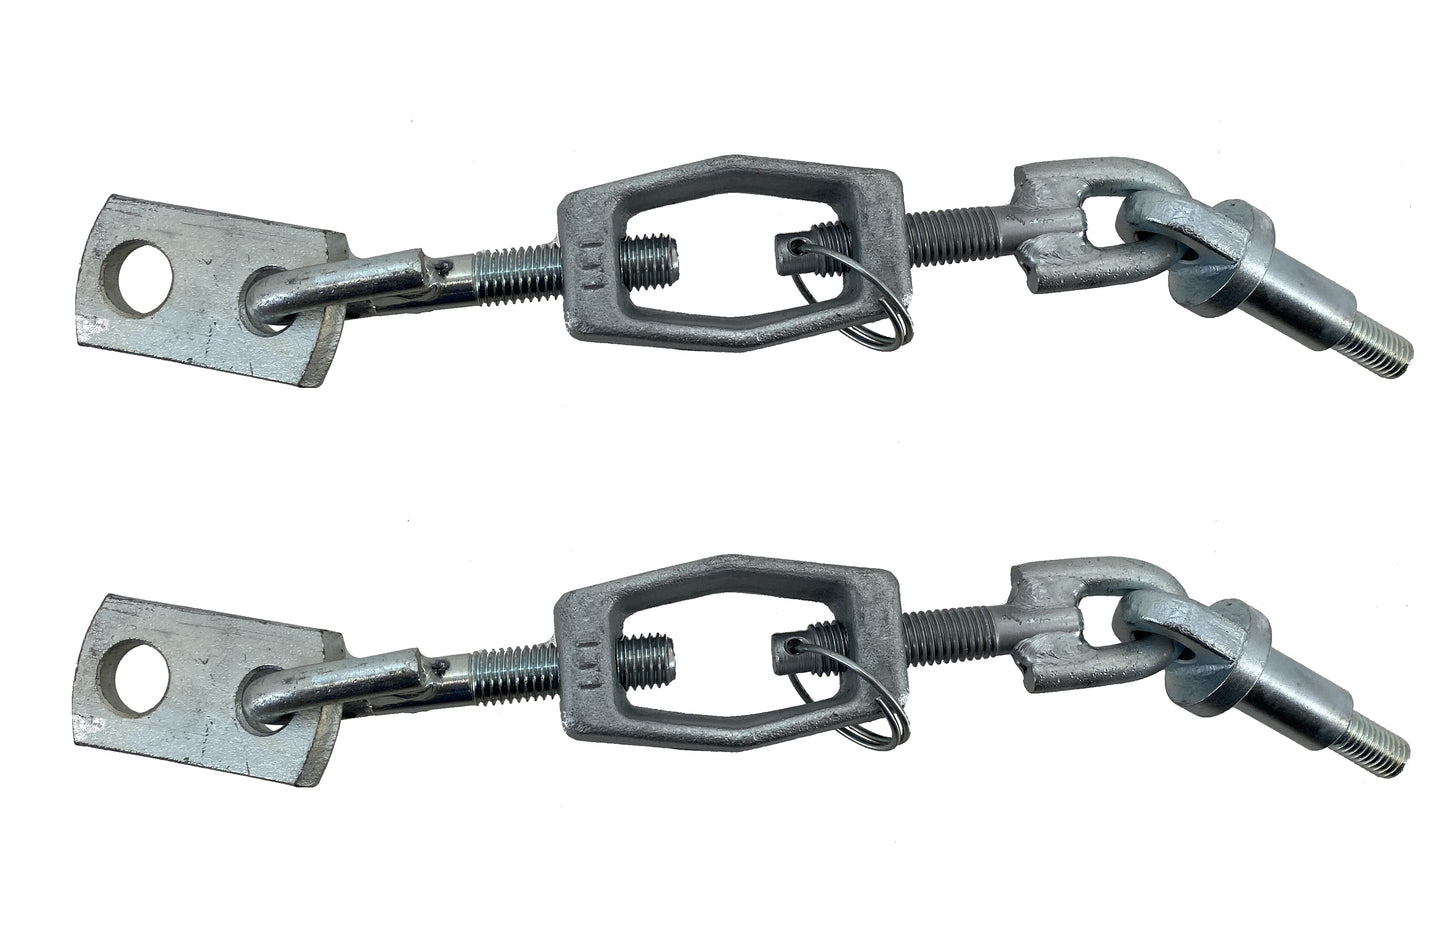 John Deere Original Equipment Sway Chain  (Pack of 2) - LVA16683